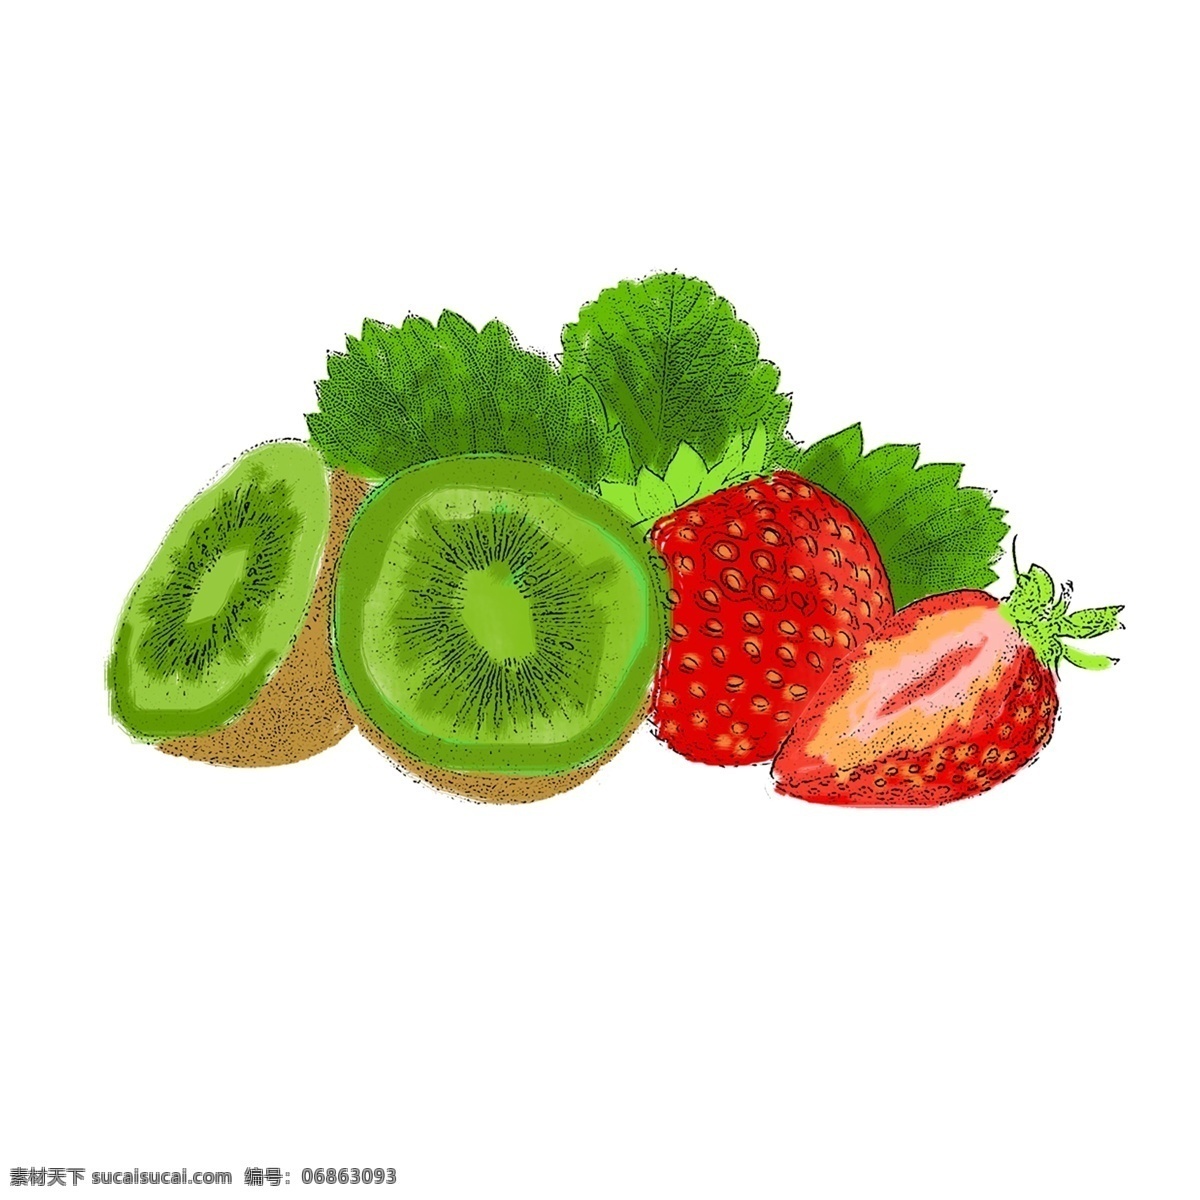 卡通 草莓 猕猴桃 水果 免 抠 图 卡通草莓 西兰花 花椰菜 水墨 手绘 猕猴 挑